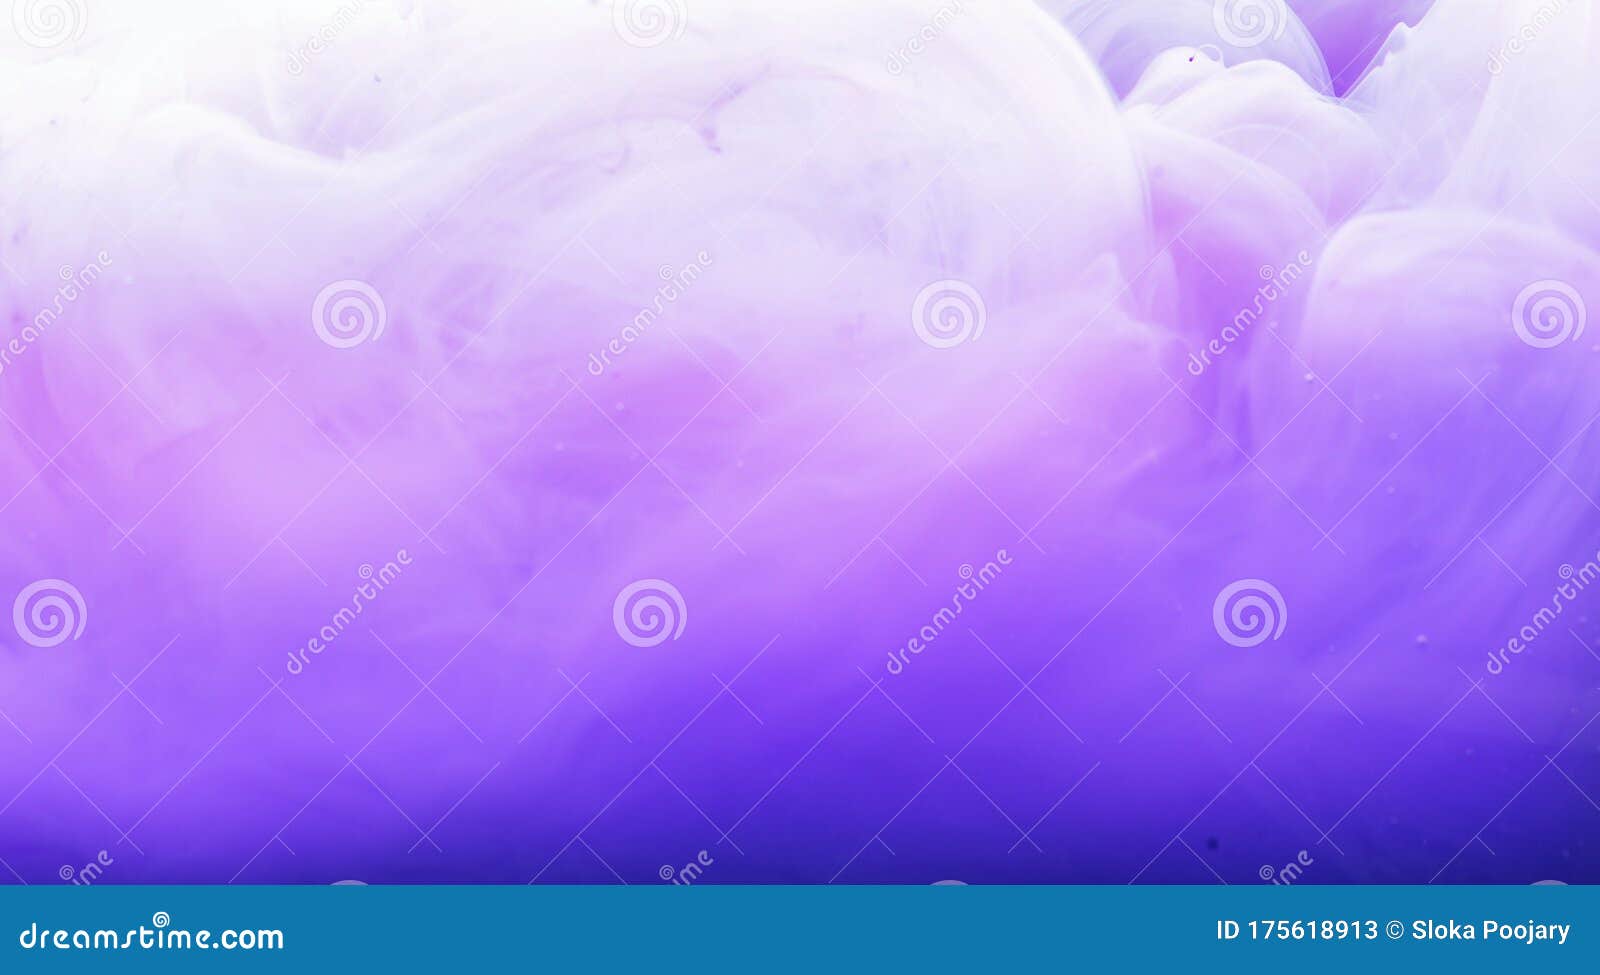 紫白色烟幕效果背景 烟气 雾纹3 时尚壁纸库存图片 图片包括有紫白色烟幕效果背景 烟气 雾纹3 时尚壁纸